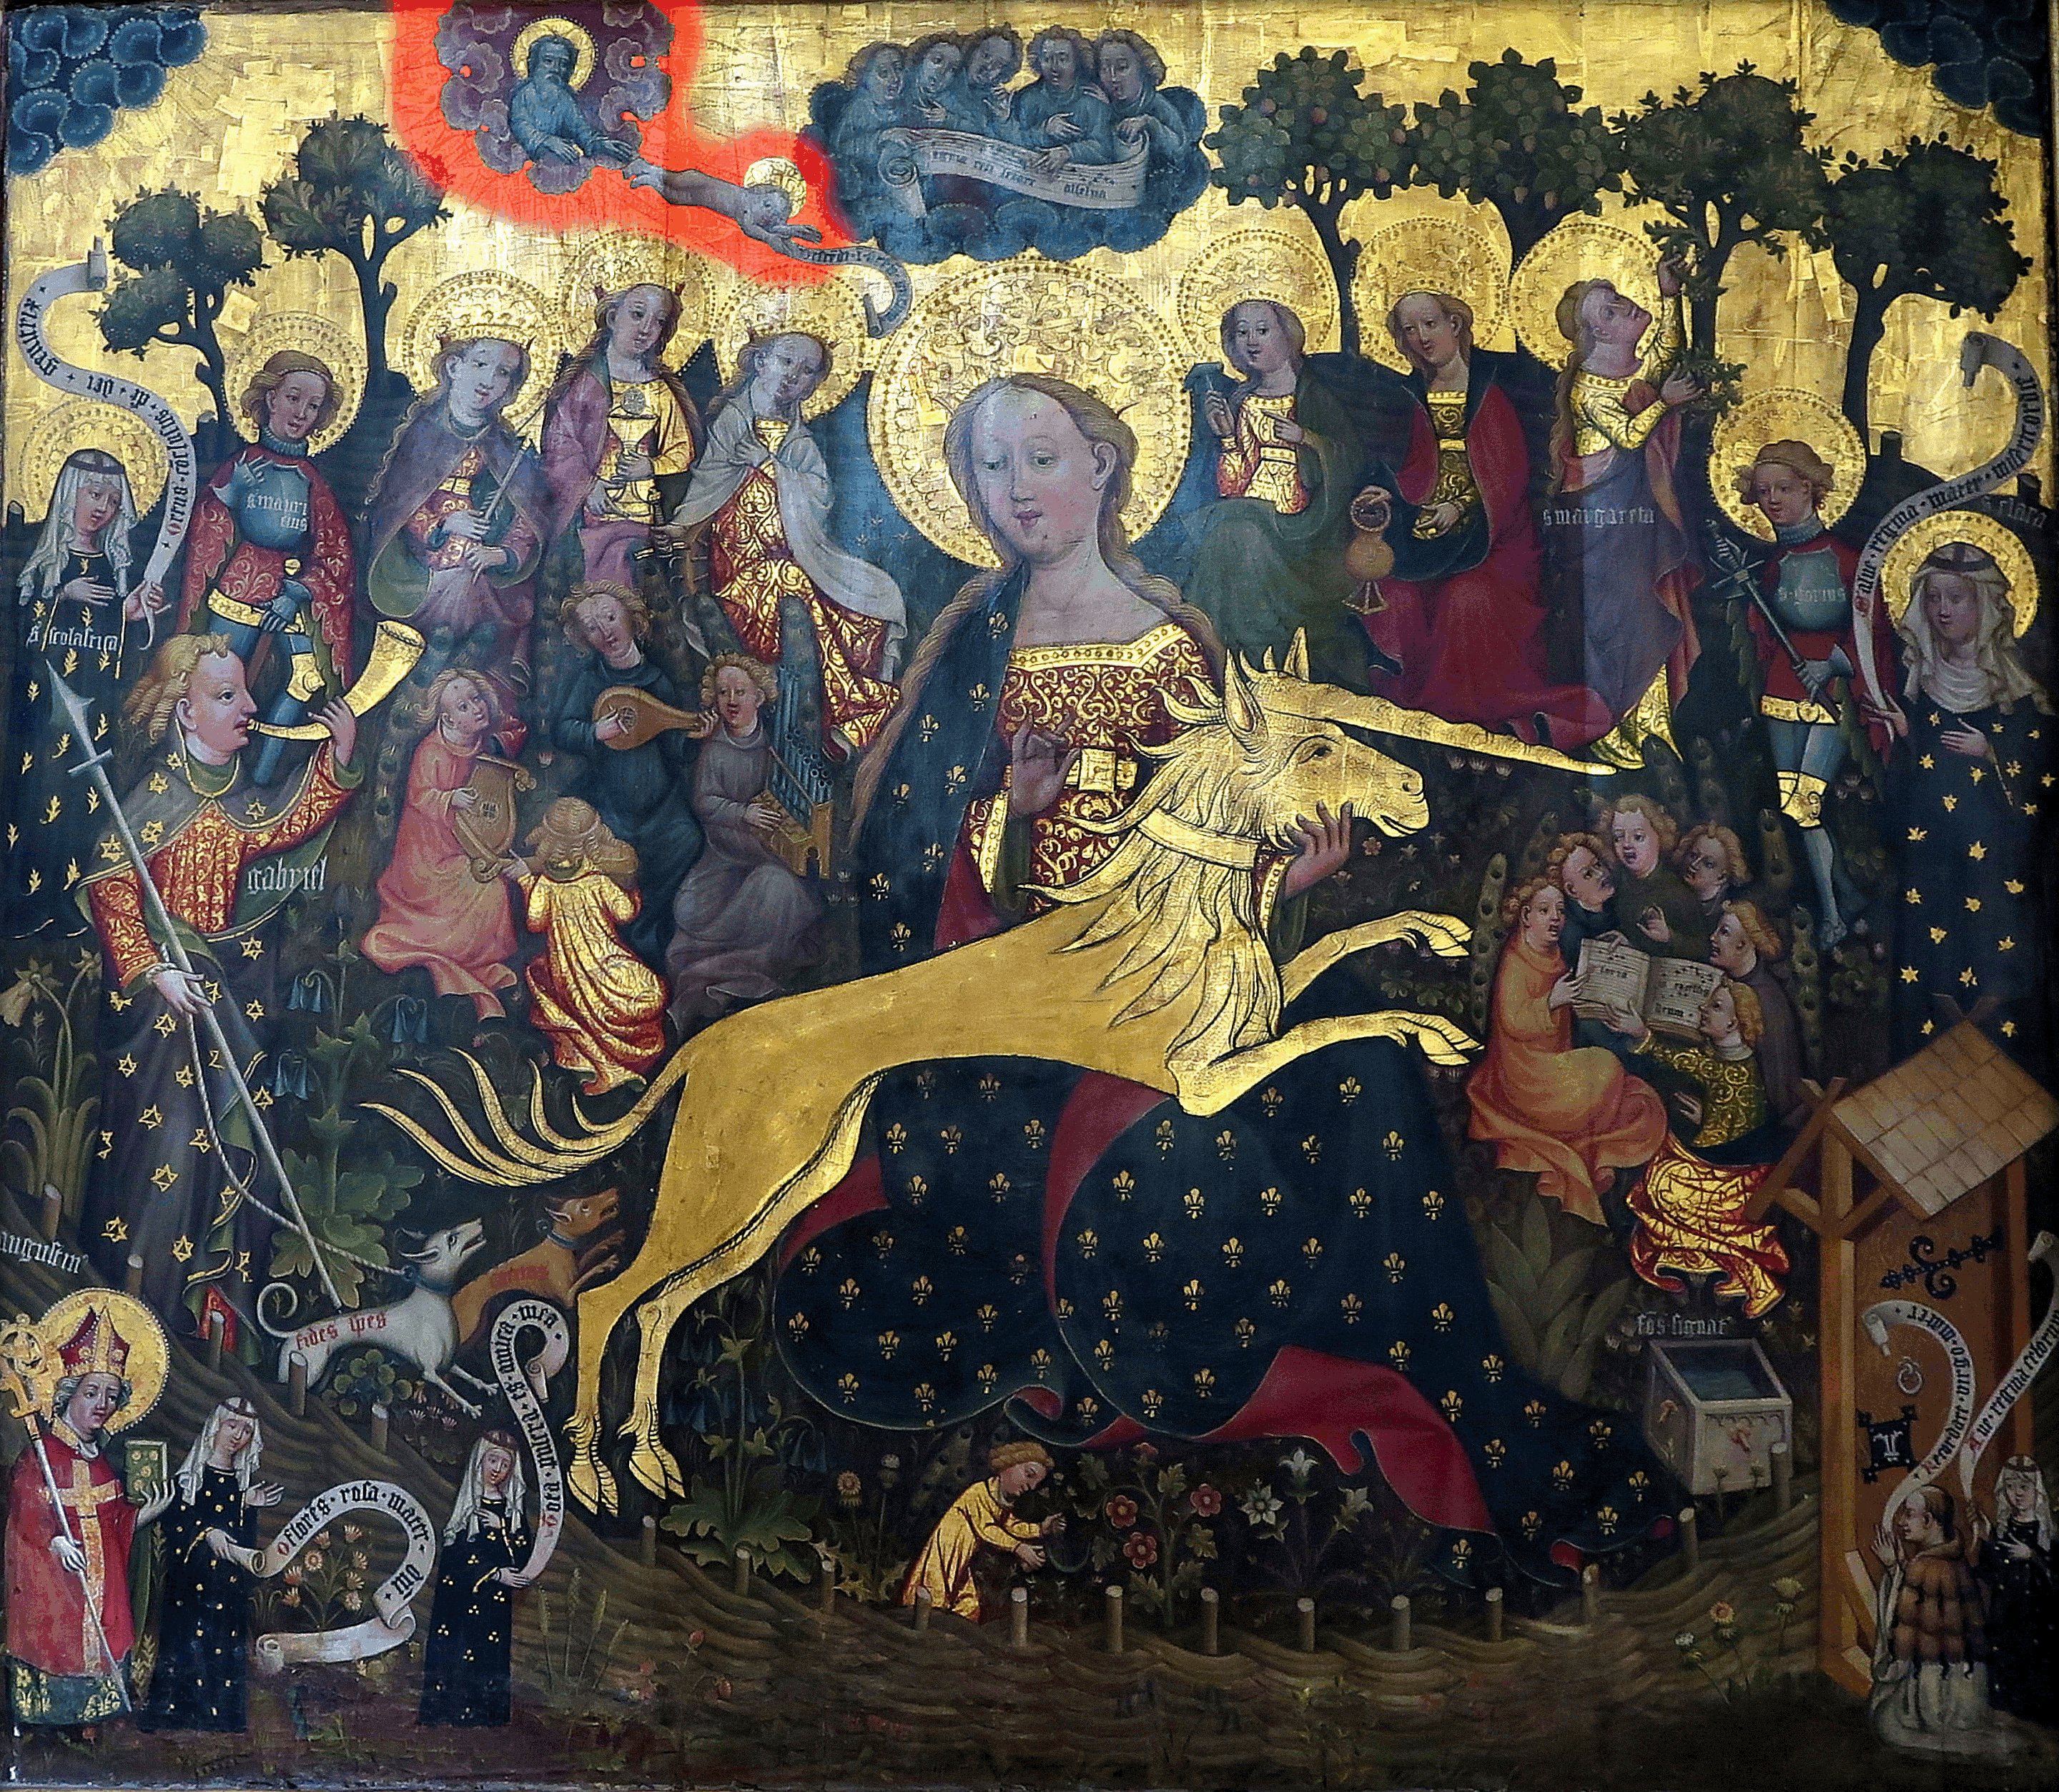 Abbildung eines Altars aus dem 14. Jh. Auffällig goldige Verzierungen, zu sehen sind versch. biblische Figuren. Im Fokus ist eine Frau samt Heiligenschein, welche das goldige Einhorn in den Händen hält.